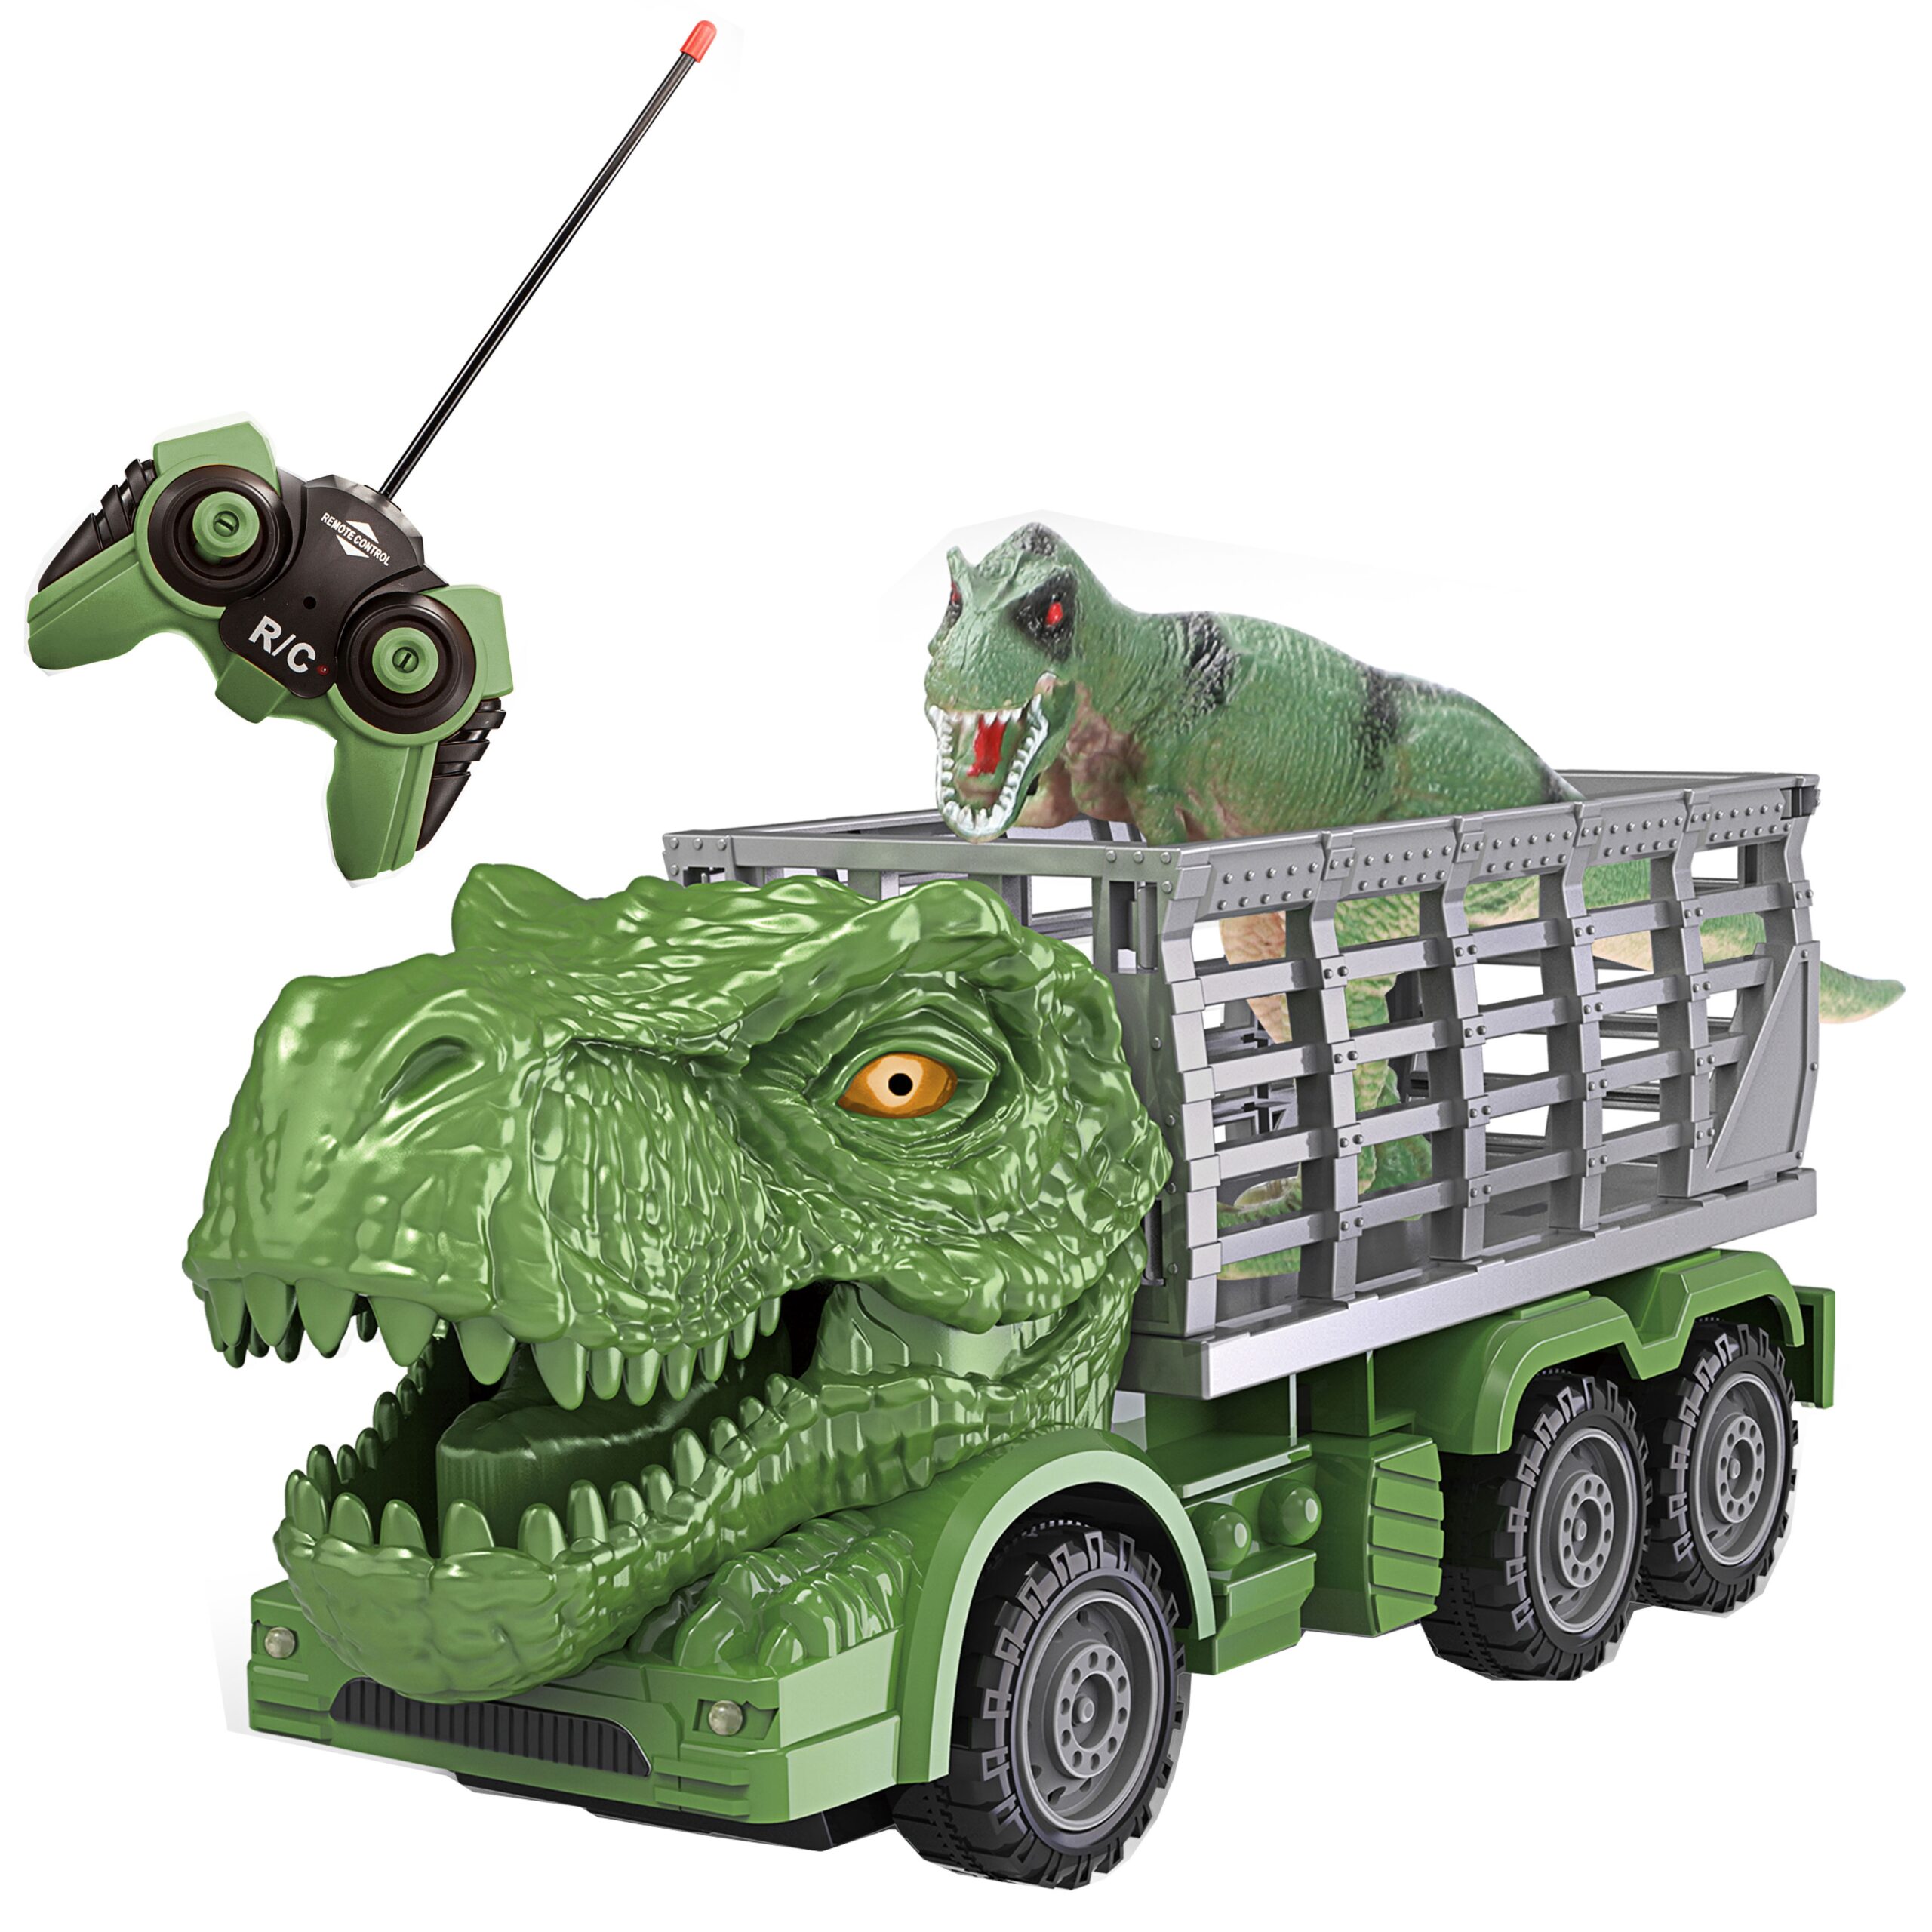 Samochód zdalnie sterowany rc - dinozaur zielony + figurka, zabawka dla dzieci, Woopie